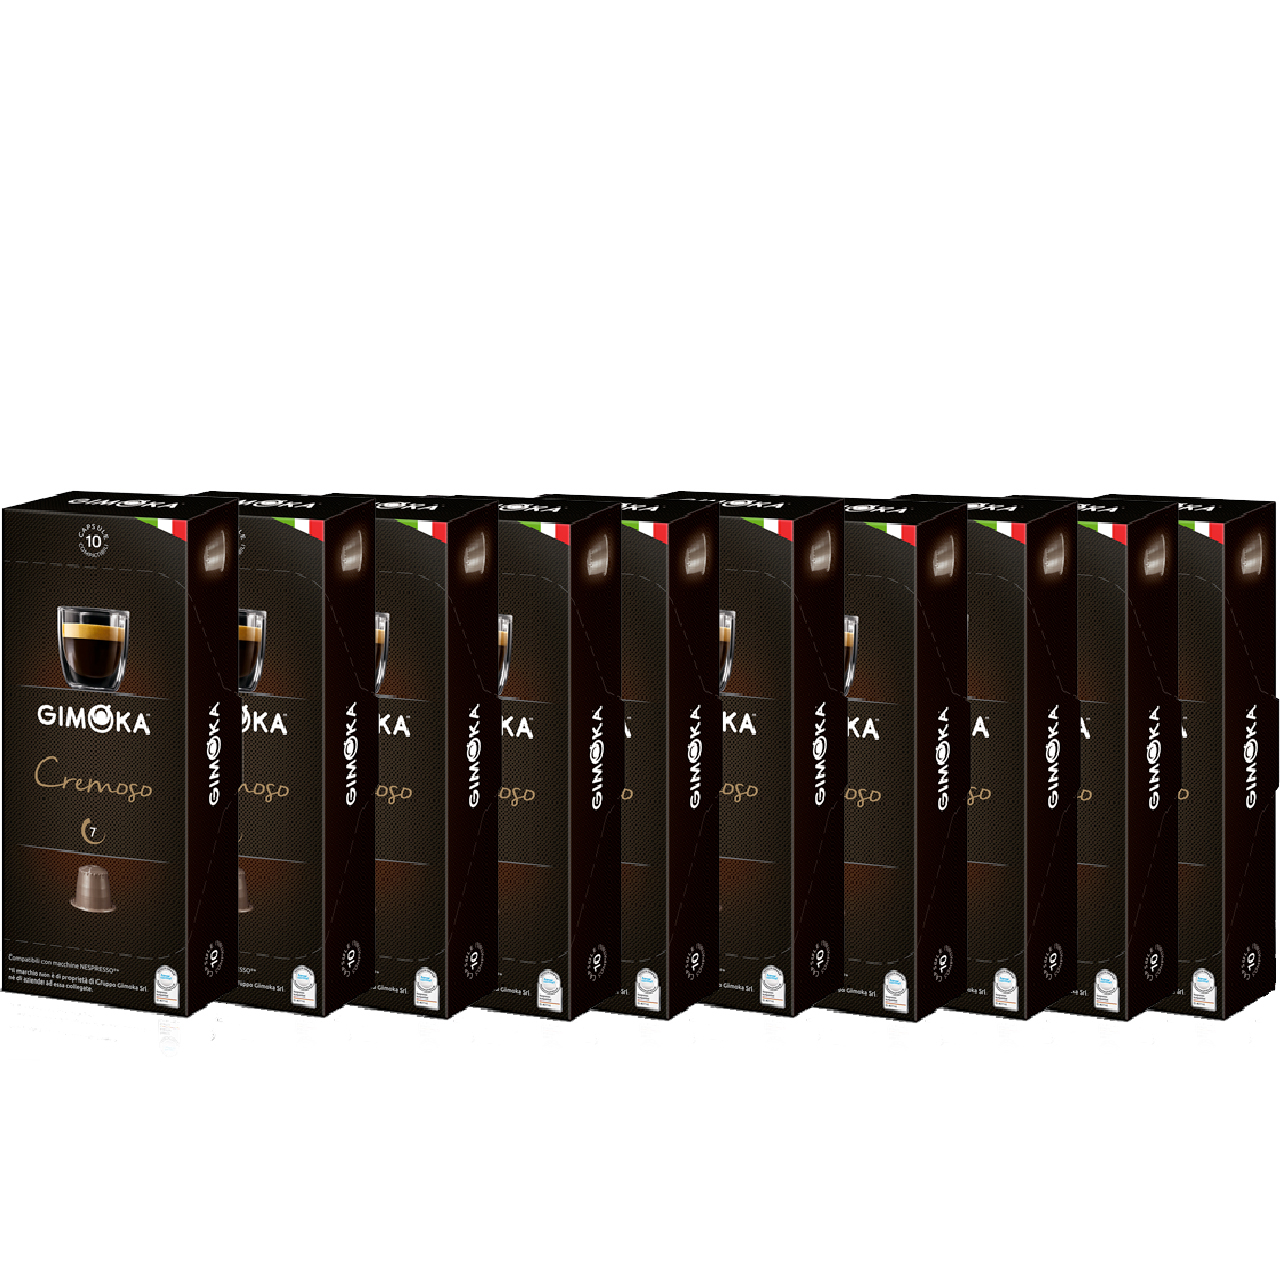 کپسول قهوه جیموکا مدل Cremoso بسته 100 عددی